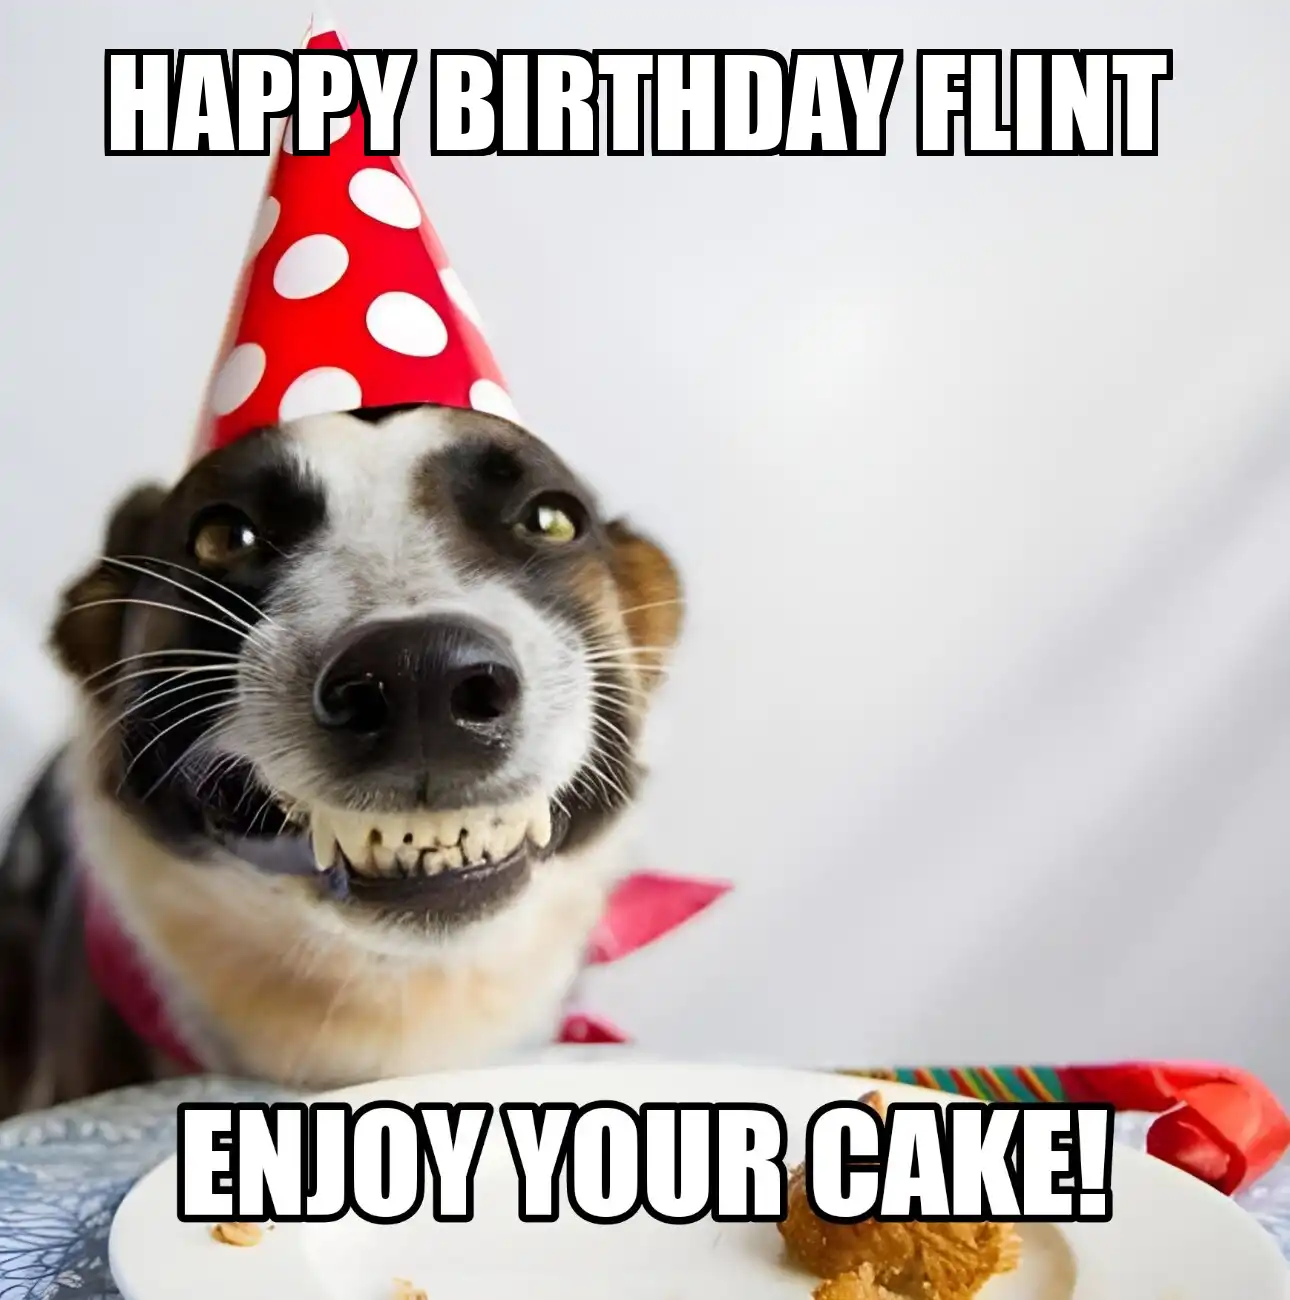 Happy Birthday Flint Enjoy Your Cake Dog Meme